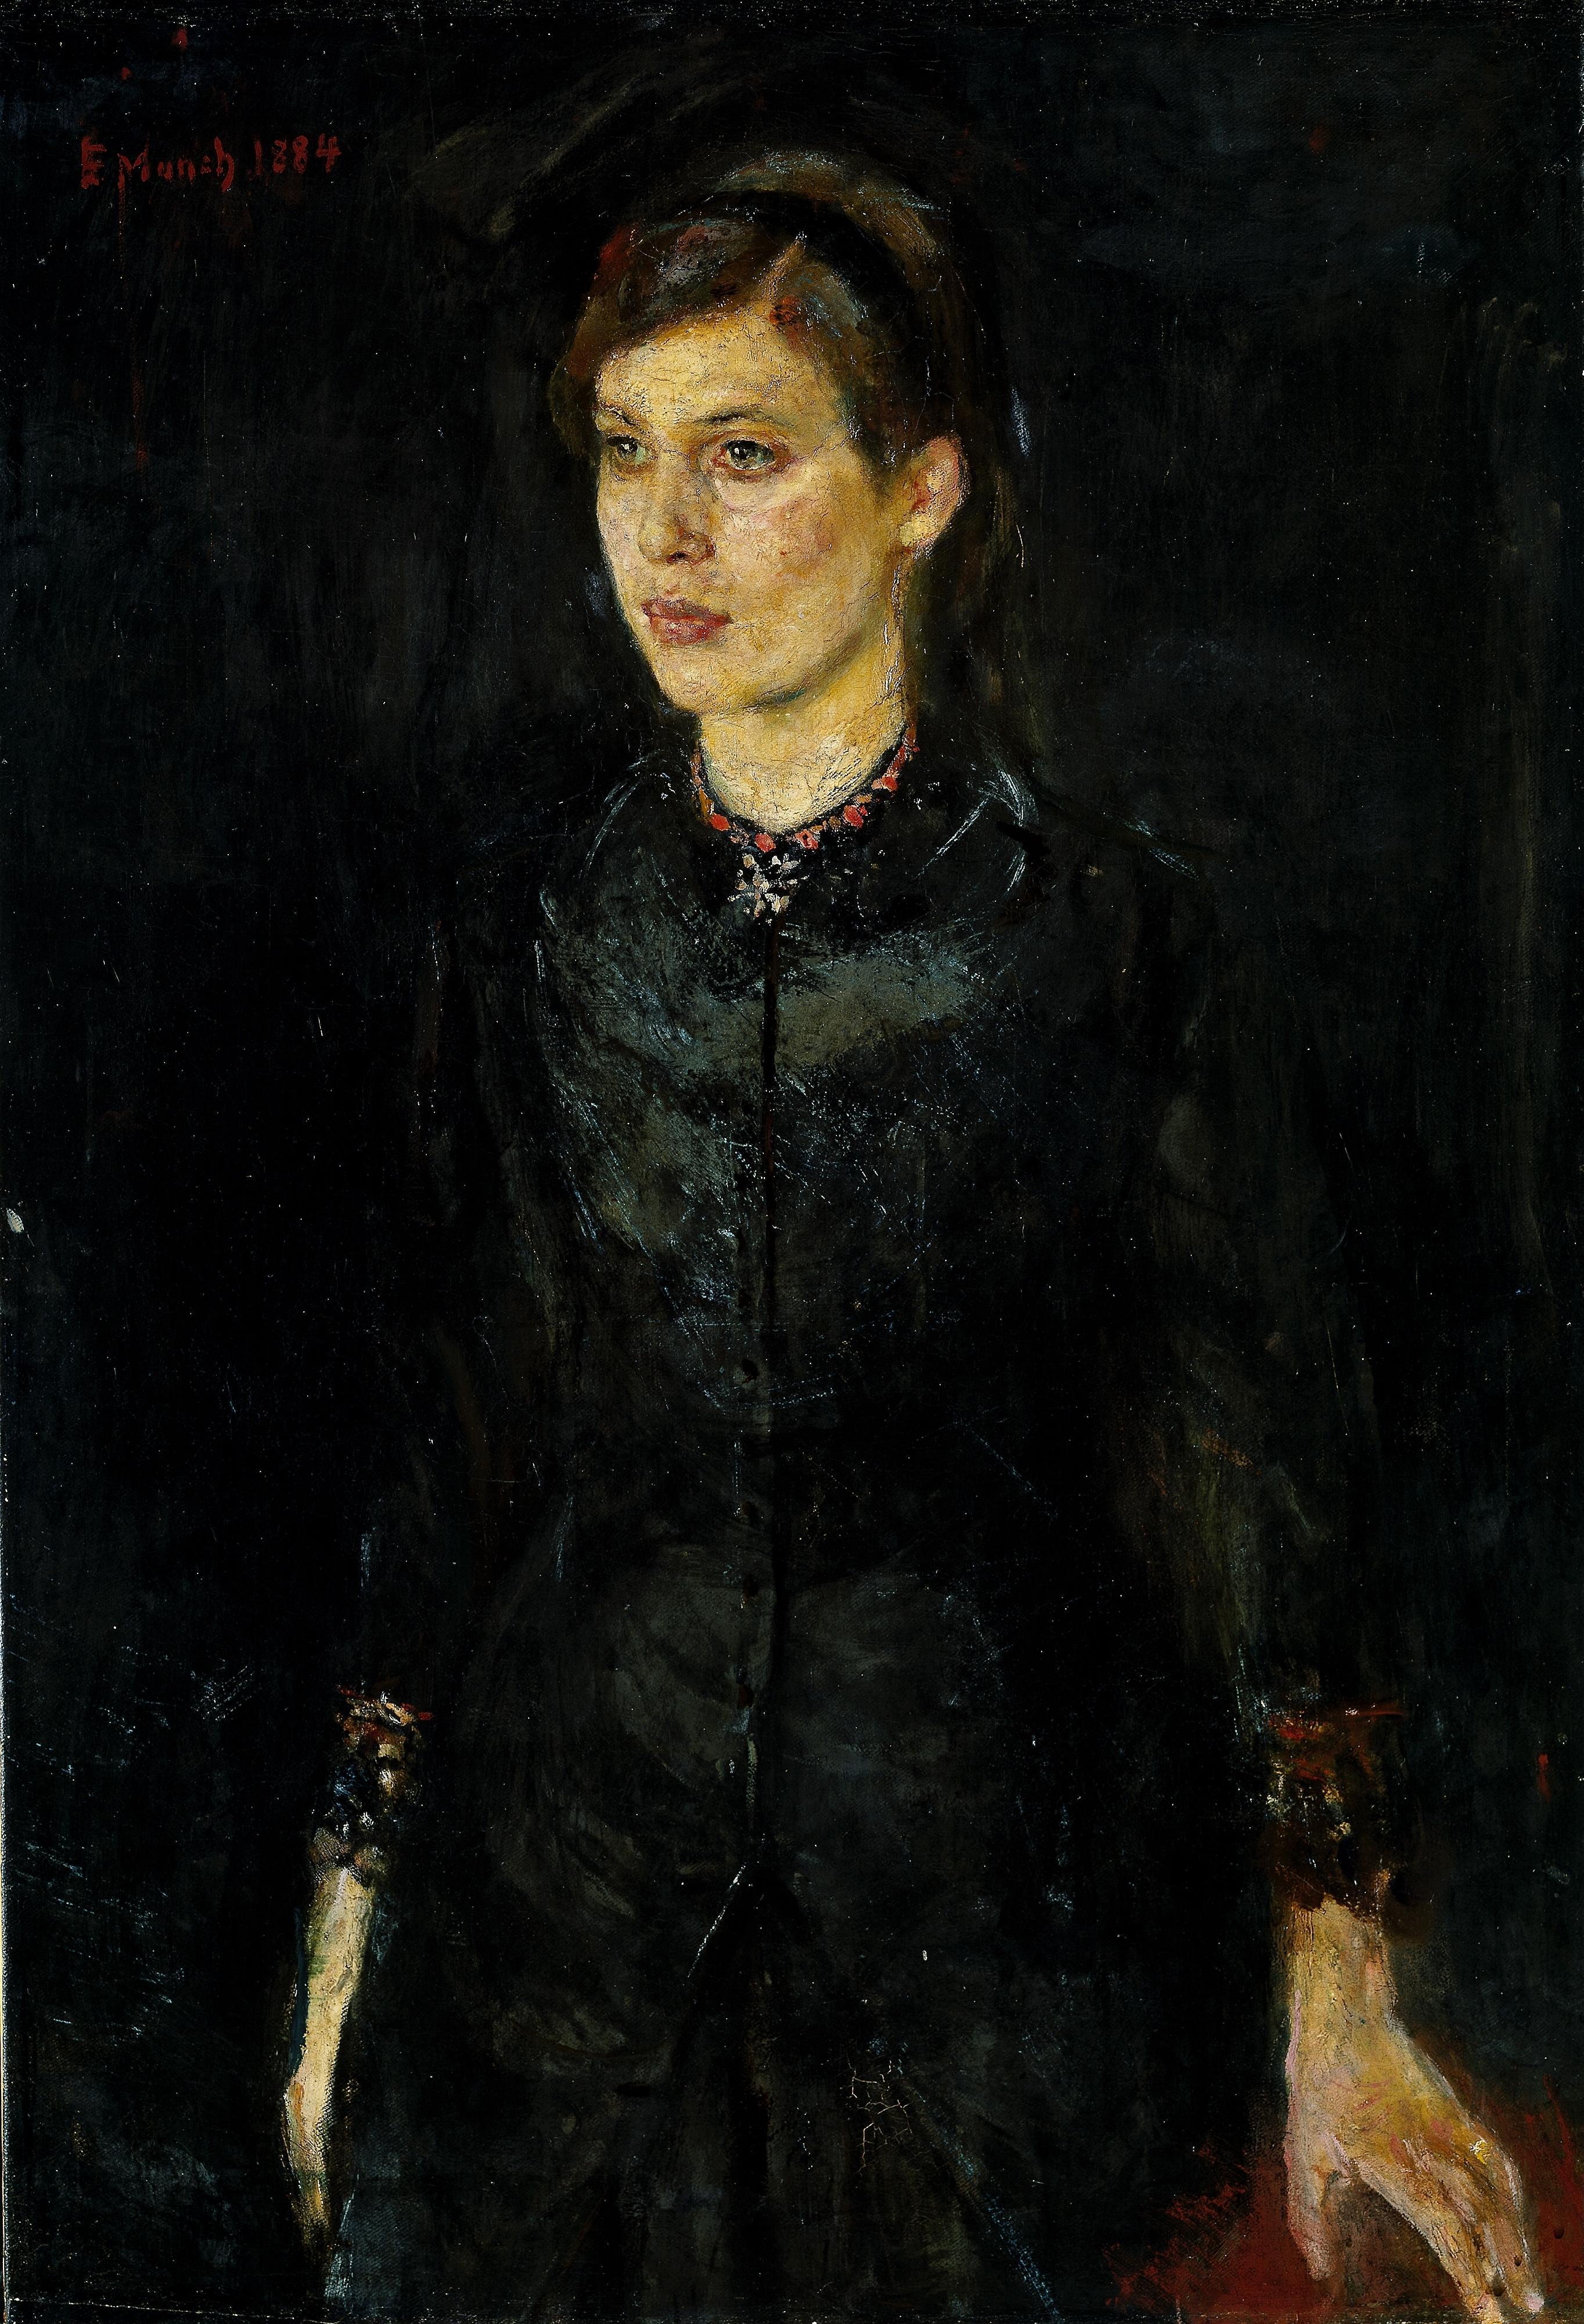 Inger in Black by Edvard Munch - 1884 - 97 x 67 cm Nasjonalmuseet